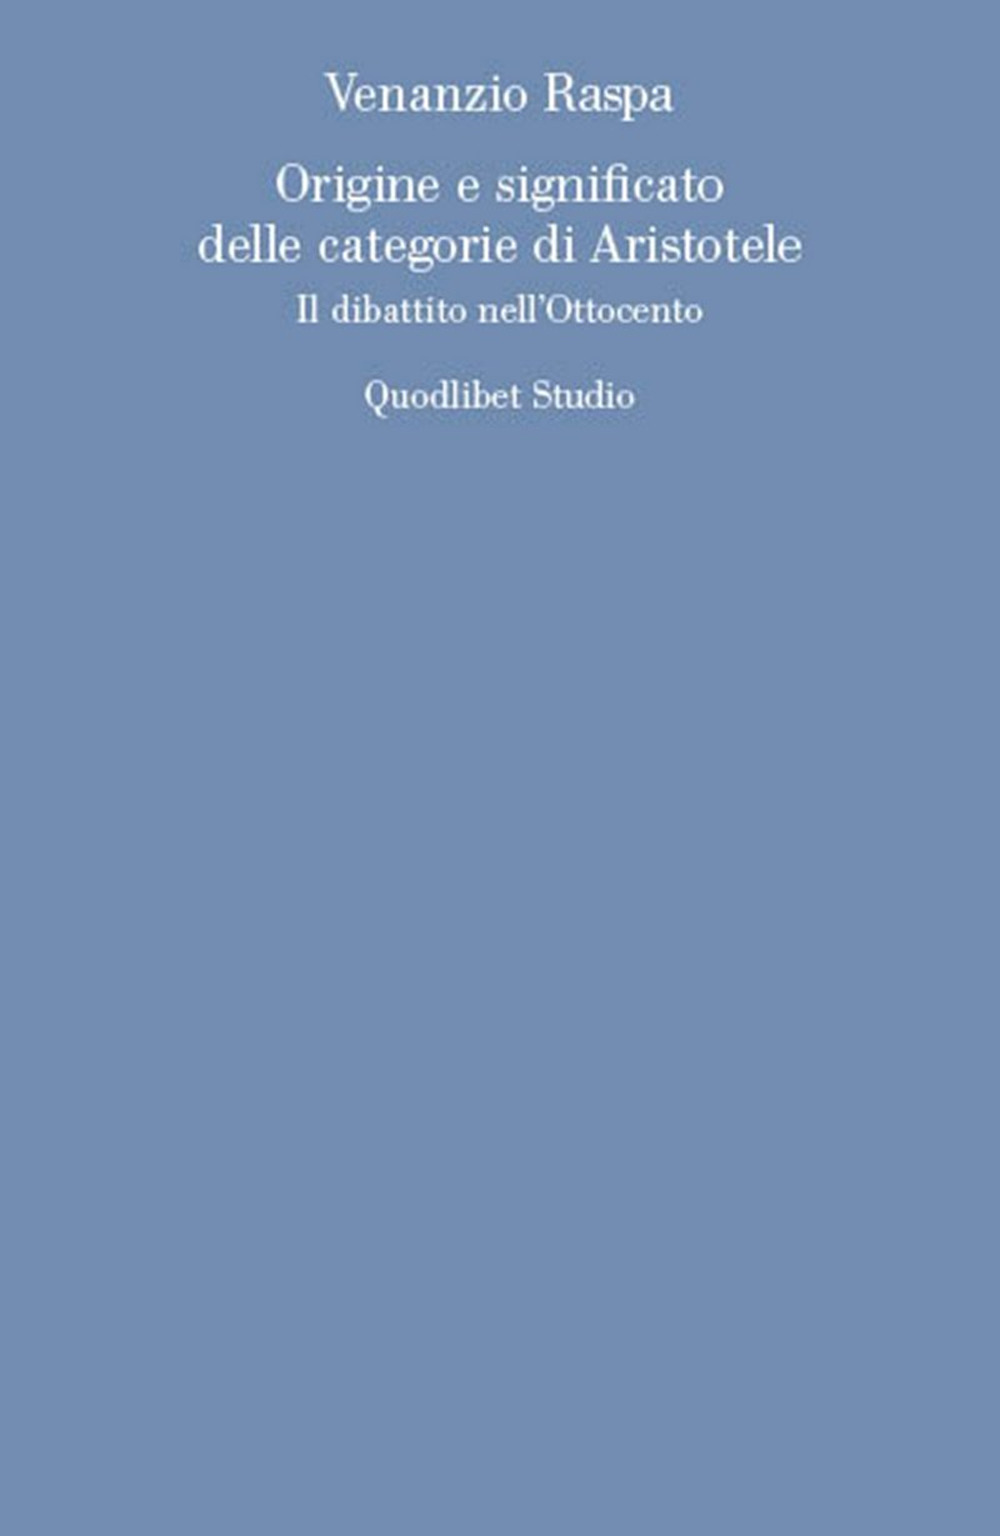 ORIGINE E SIGNIFICATO DELLE CATEGORIE DI ARISTOTELE. IL DIBATTITO NELL'OTTOCENTO - 9788822904751